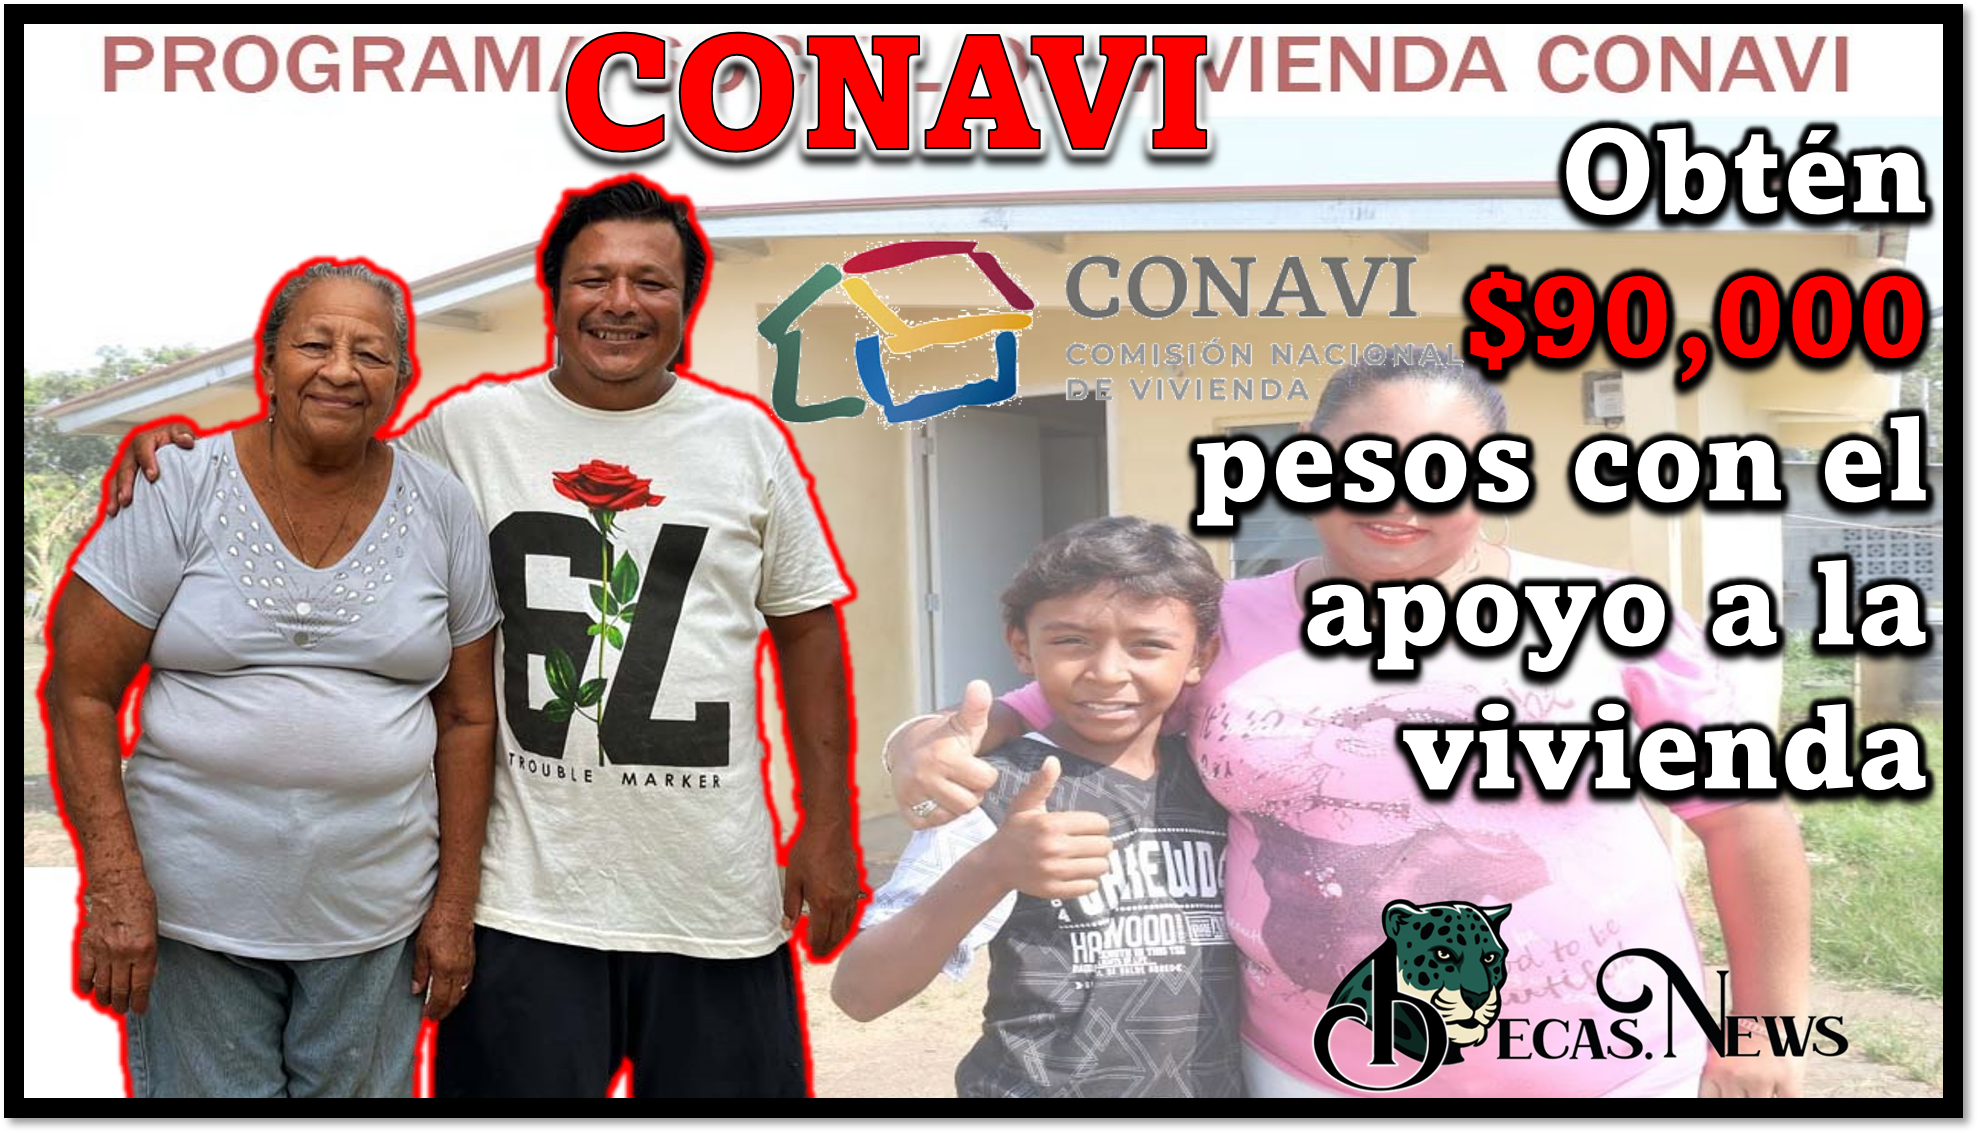 CONAVI: Obtén $90,000 pesos con el apoyo a la vivienda